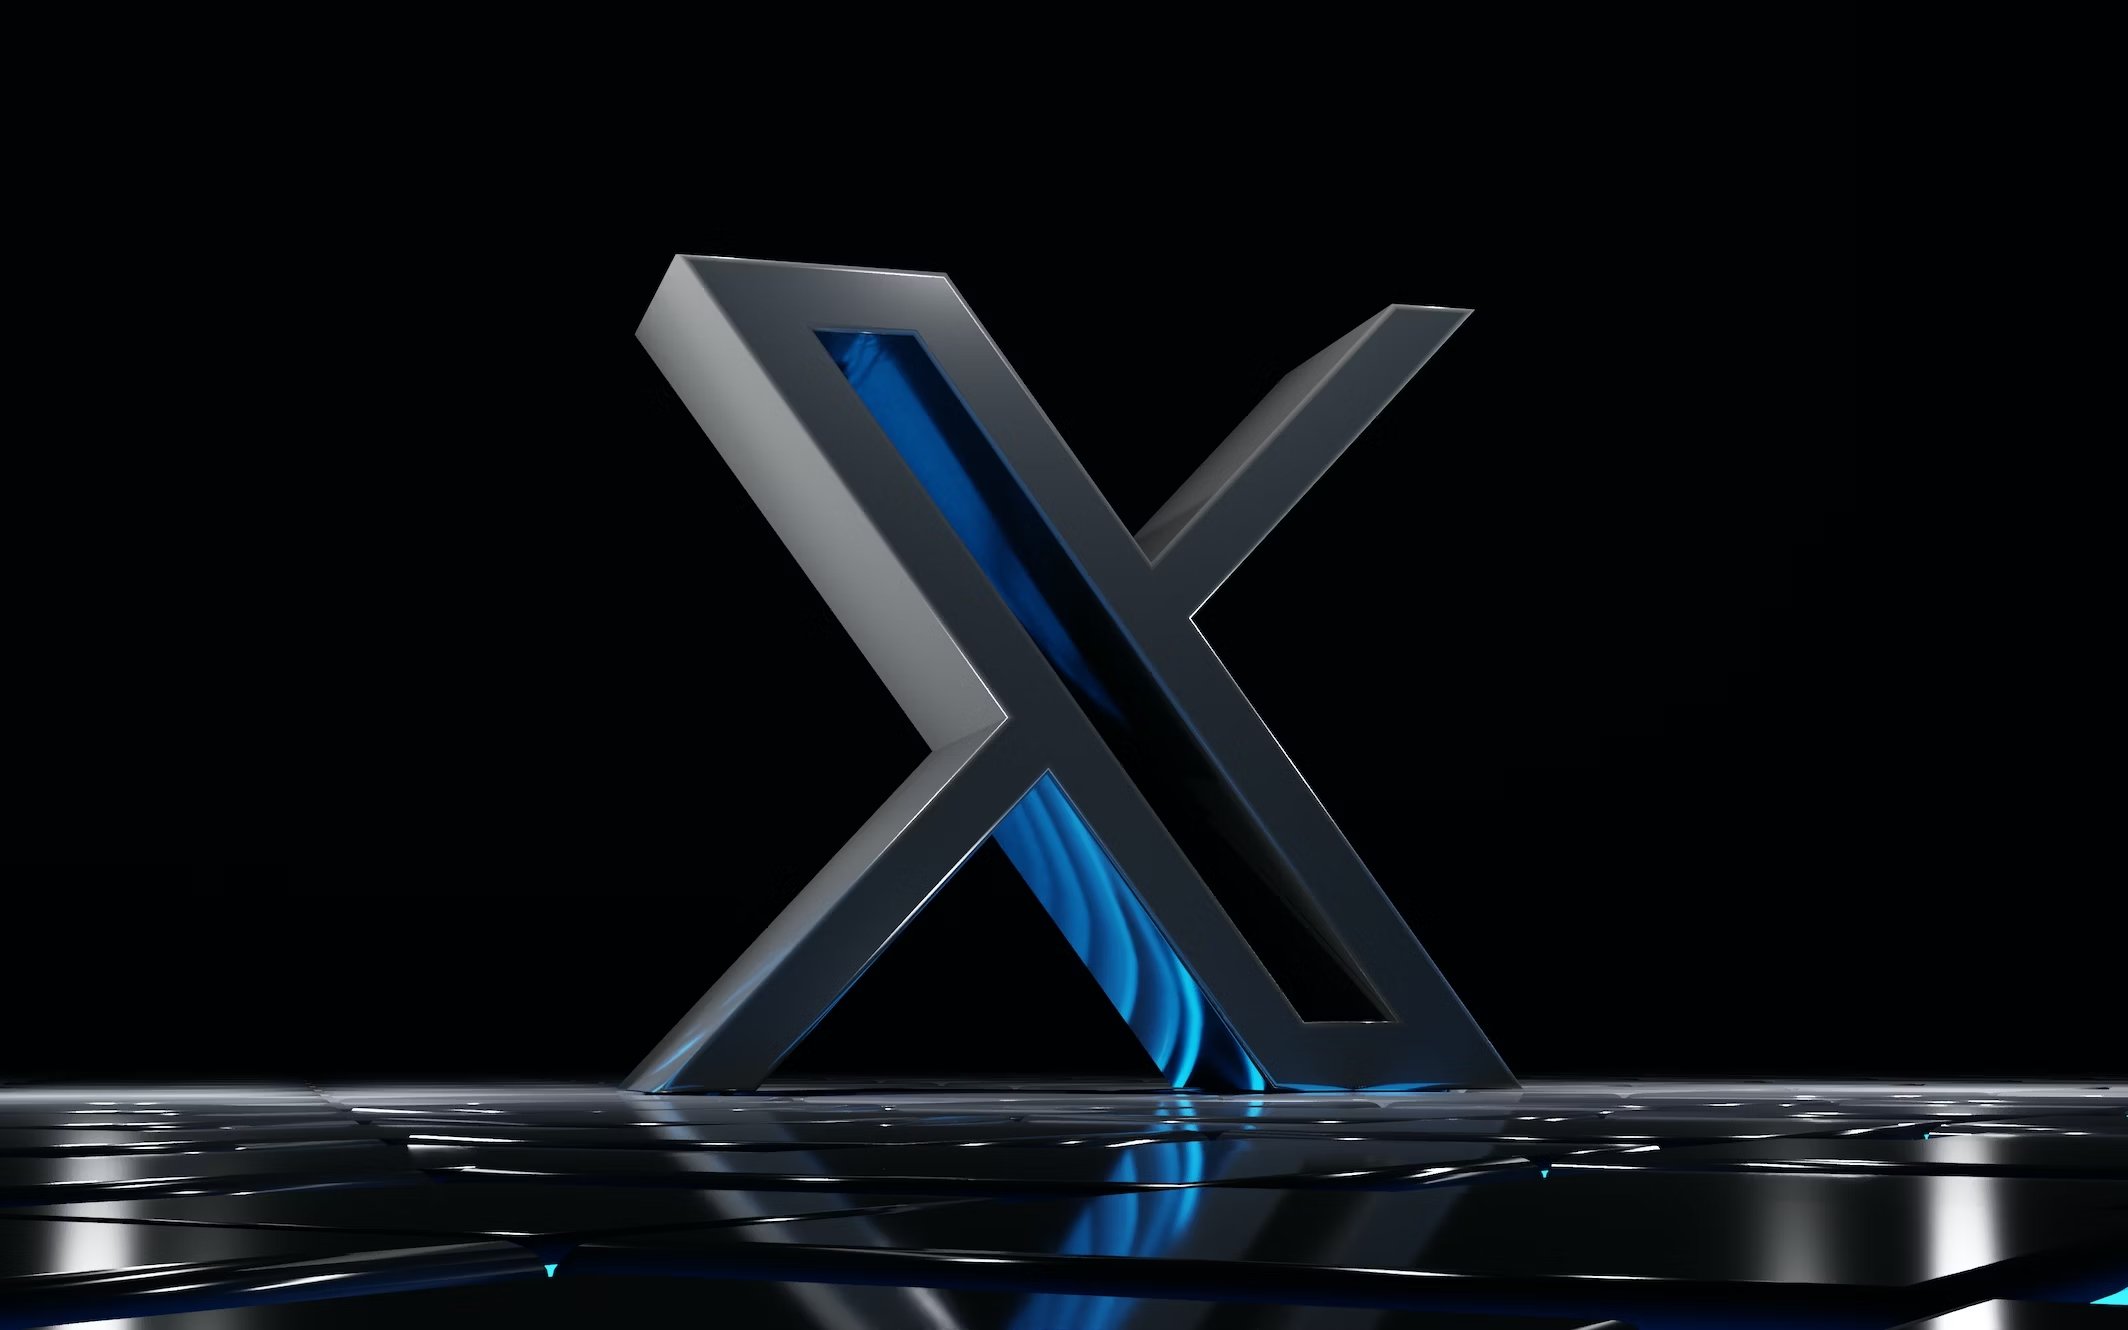 X sofre duro golpe com anunciantes a abandonarem a plataforma em recente controvérsia